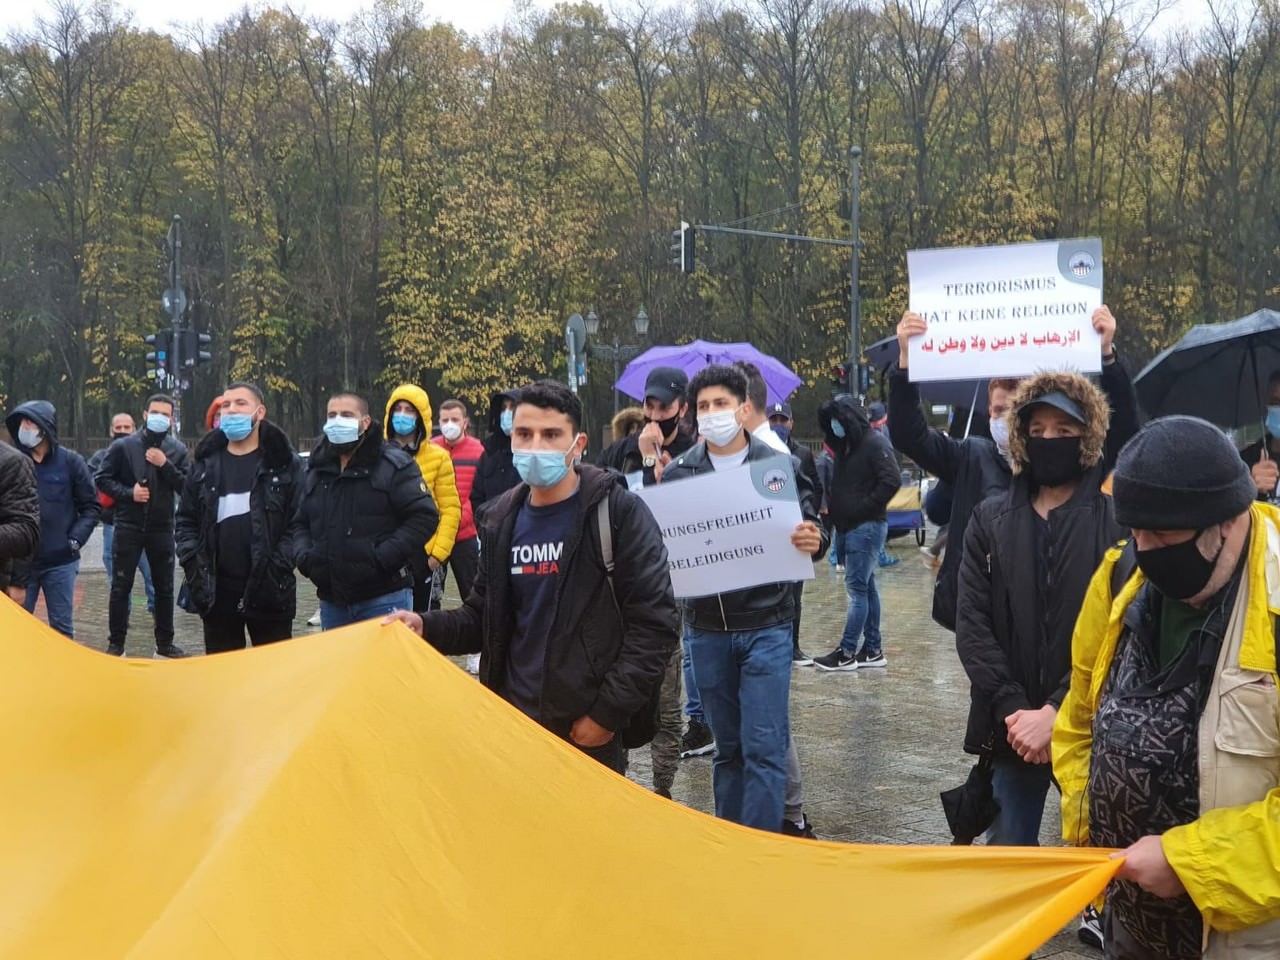 وقفة إحتجاجيّة أمام السّفارة الفرنسيّة في برلين احتجاجاً على تصريحات الرّئيس إيمانويل ماكرون